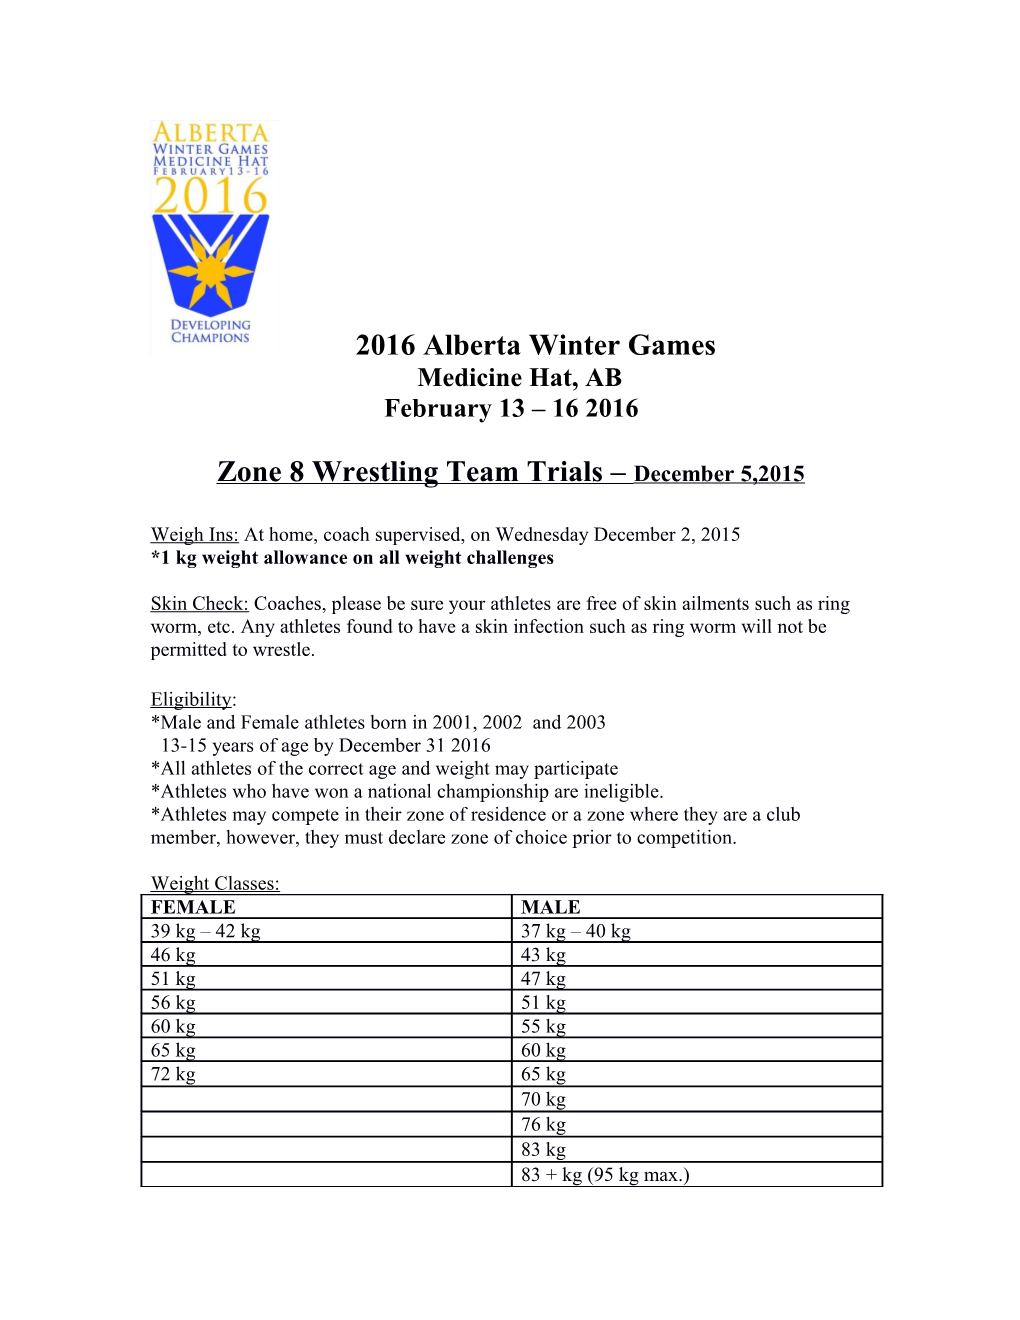 Zone 8 Wrestling Team Trials December 5,2015